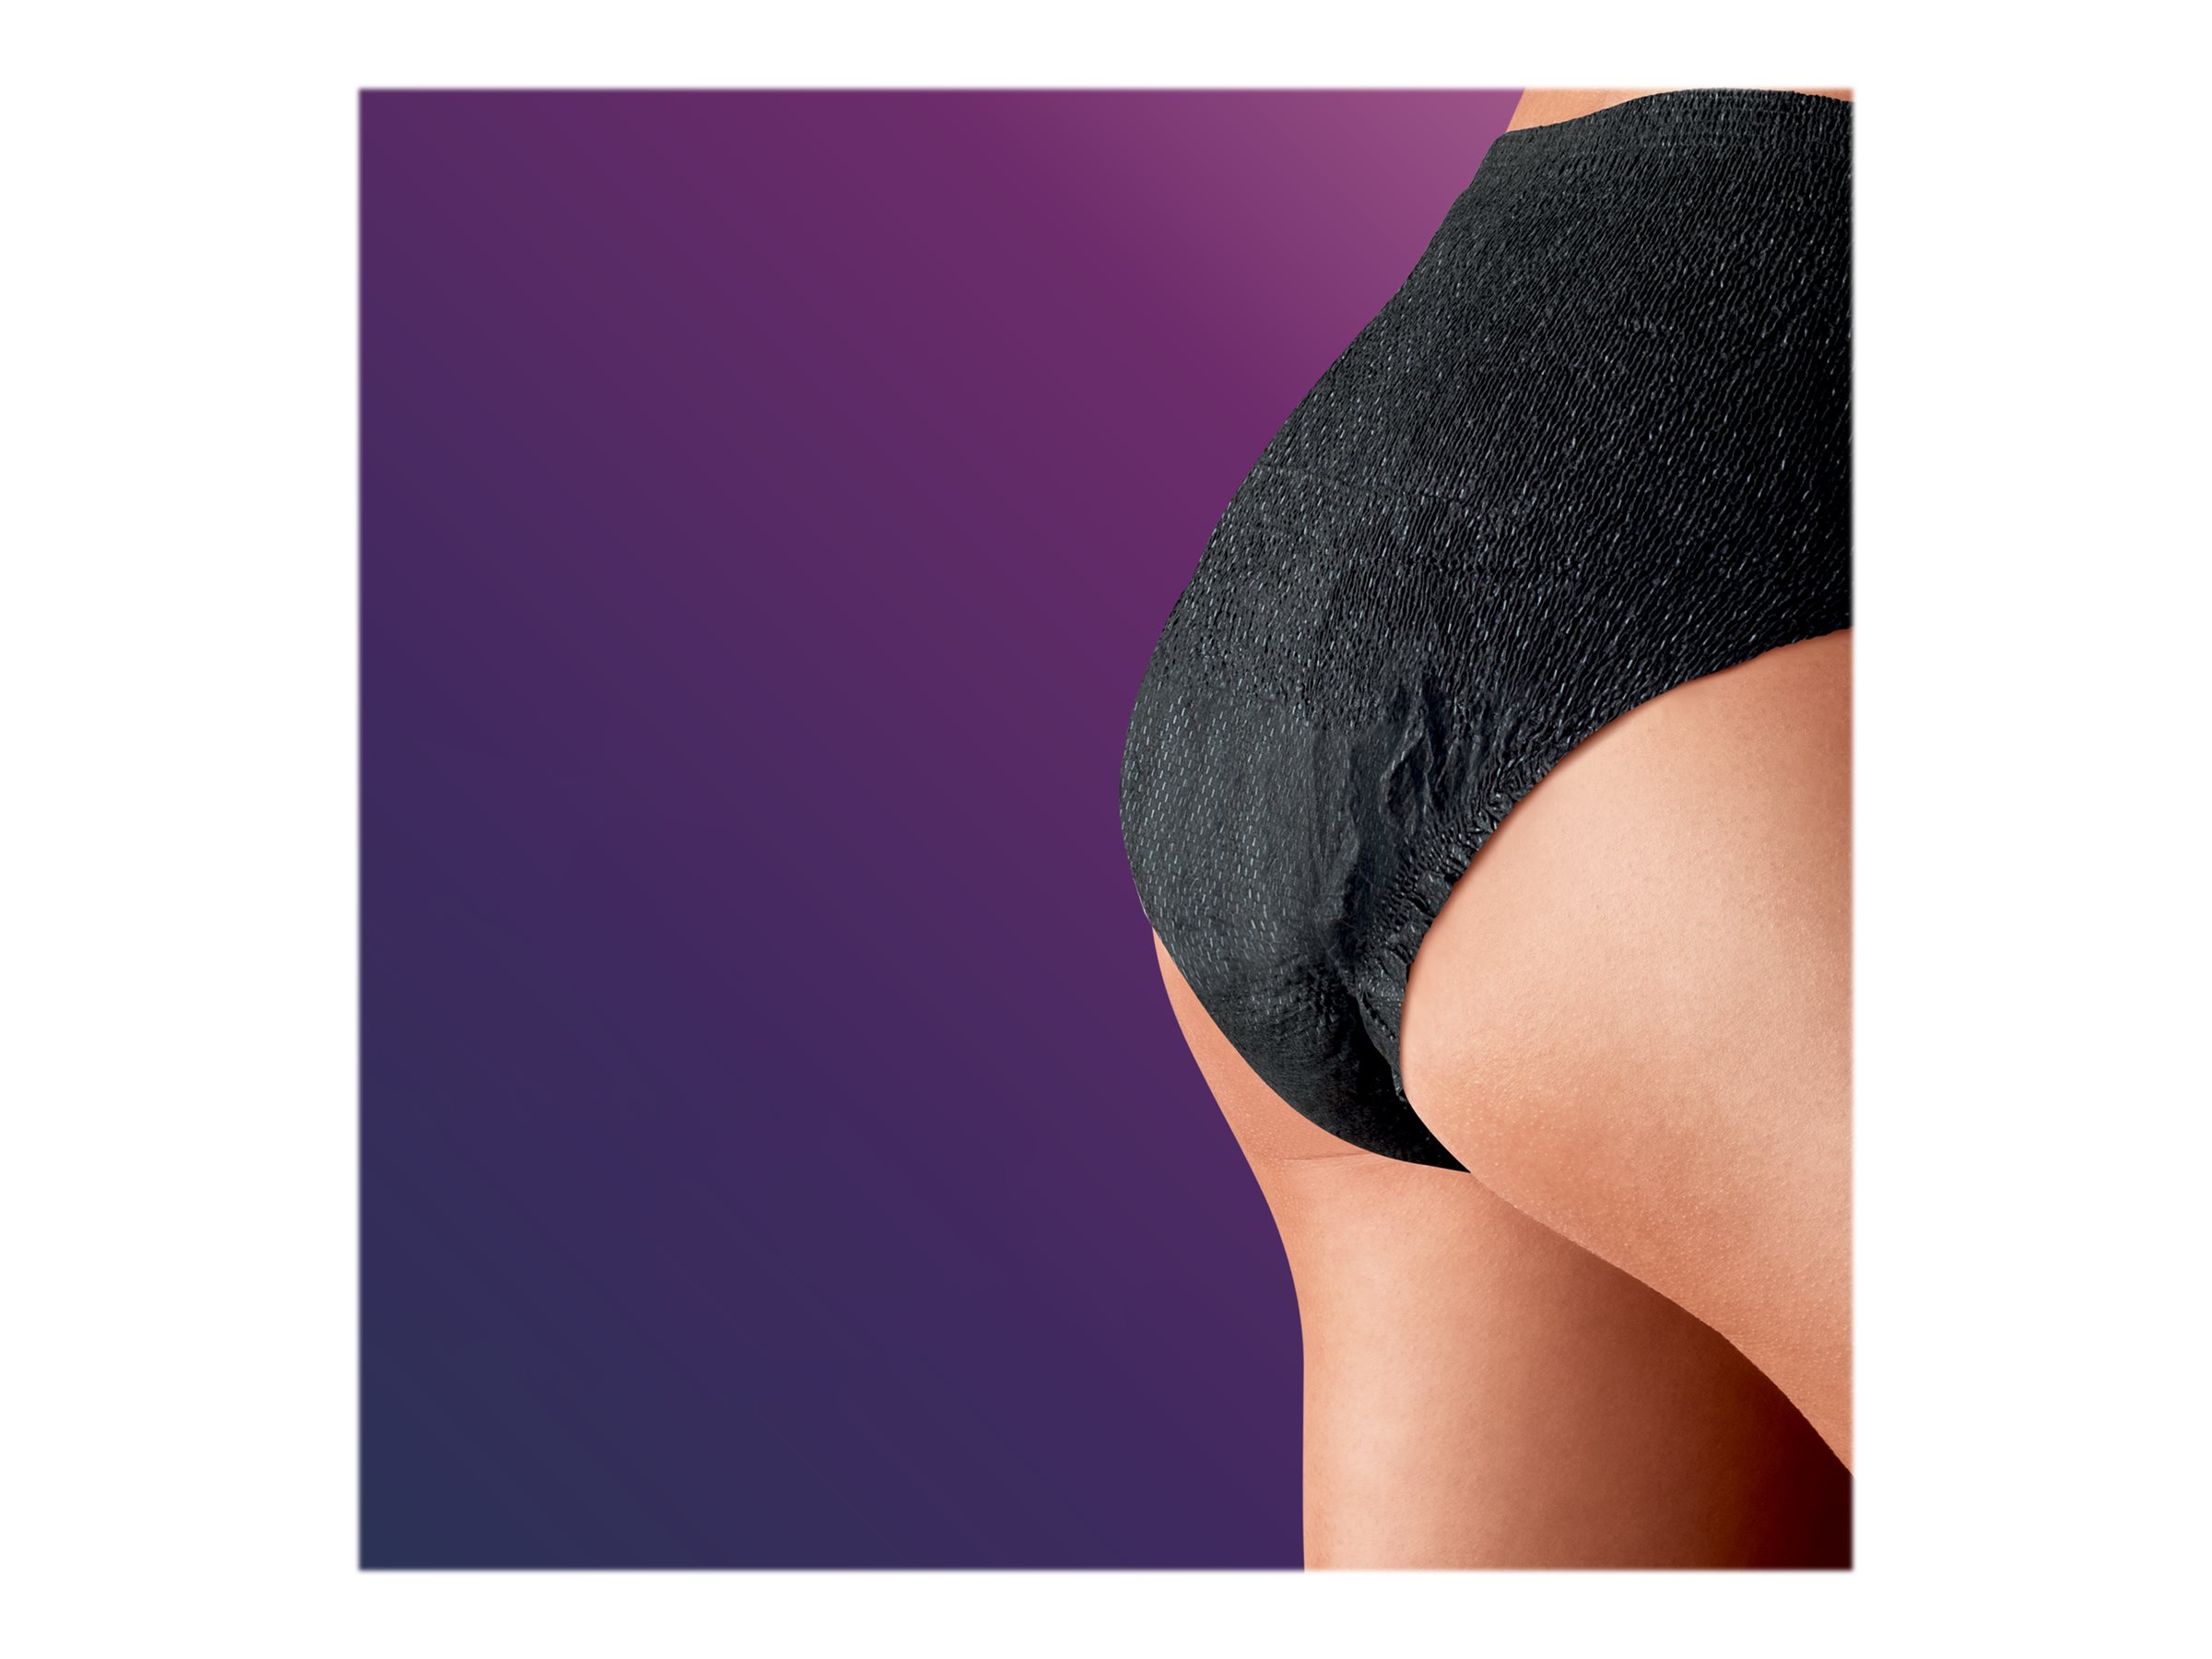 Incontinence underwear for women  Stylish bladder weakness panties - Women  - TENA Web Shop